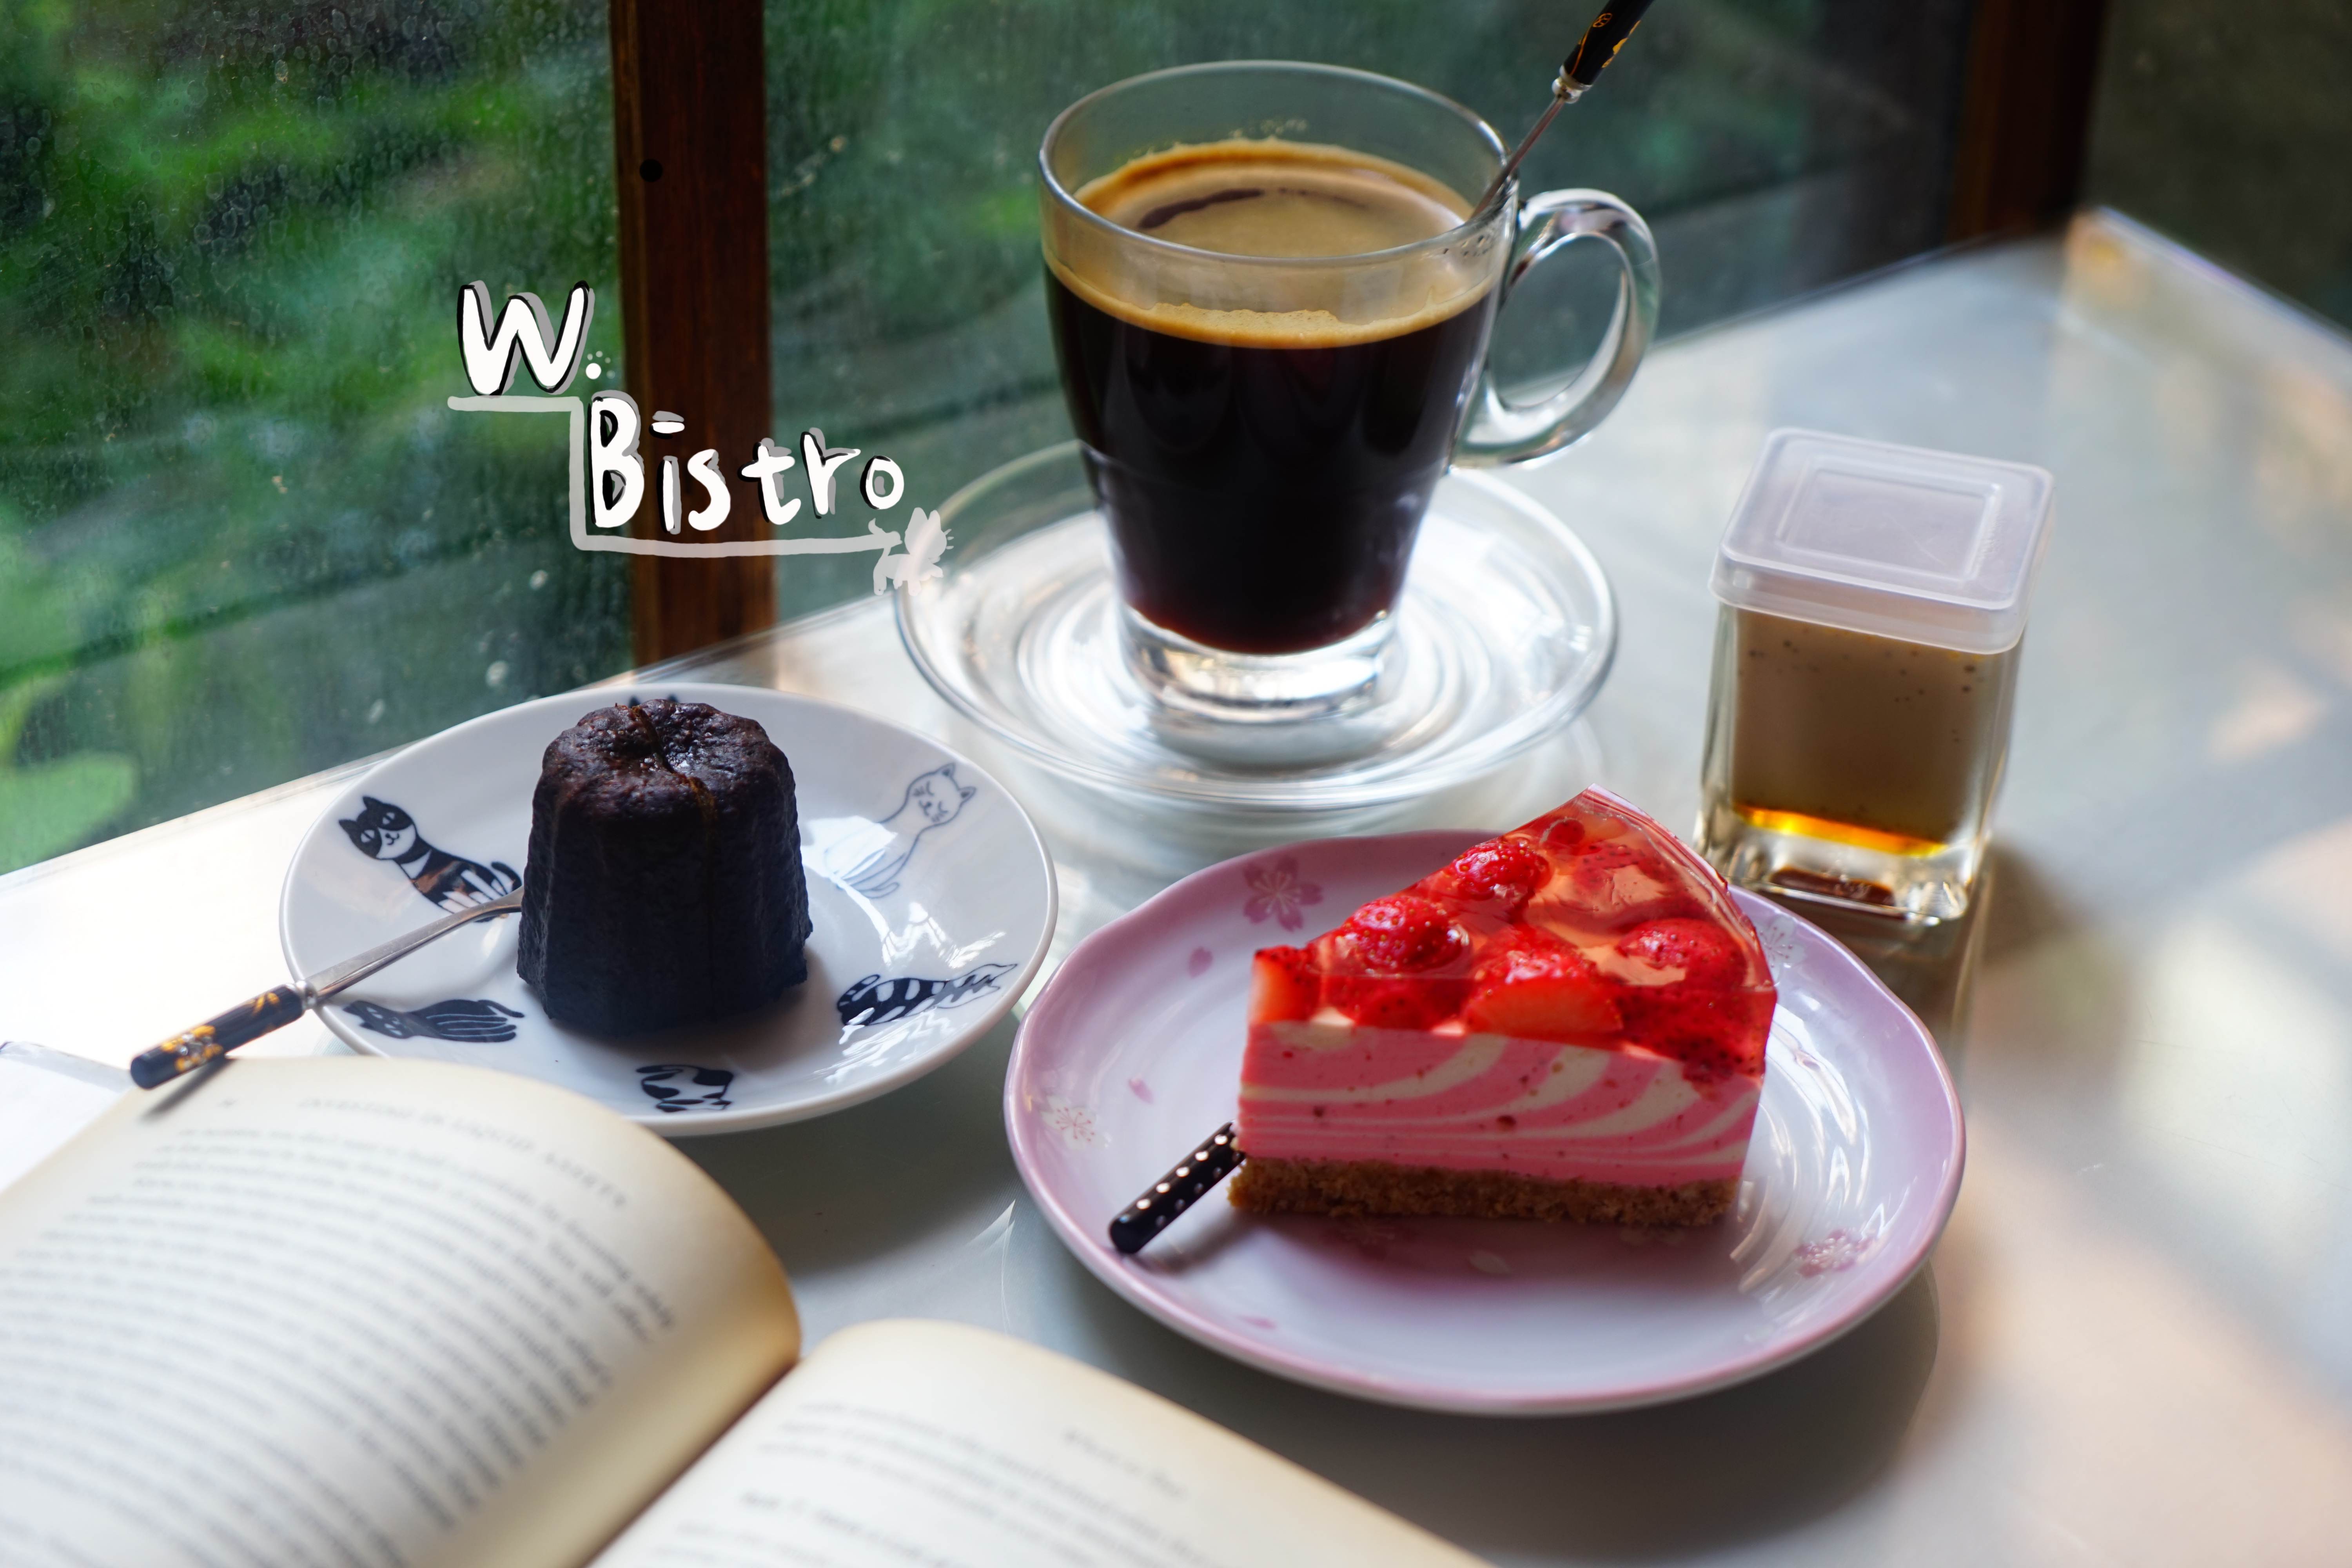  【W. Bistro】是咖啡廳還是餐酒館？調酒也能外帶？還有超精美禮盒！新竹美食/新竹必吃/新竹咖啡廳